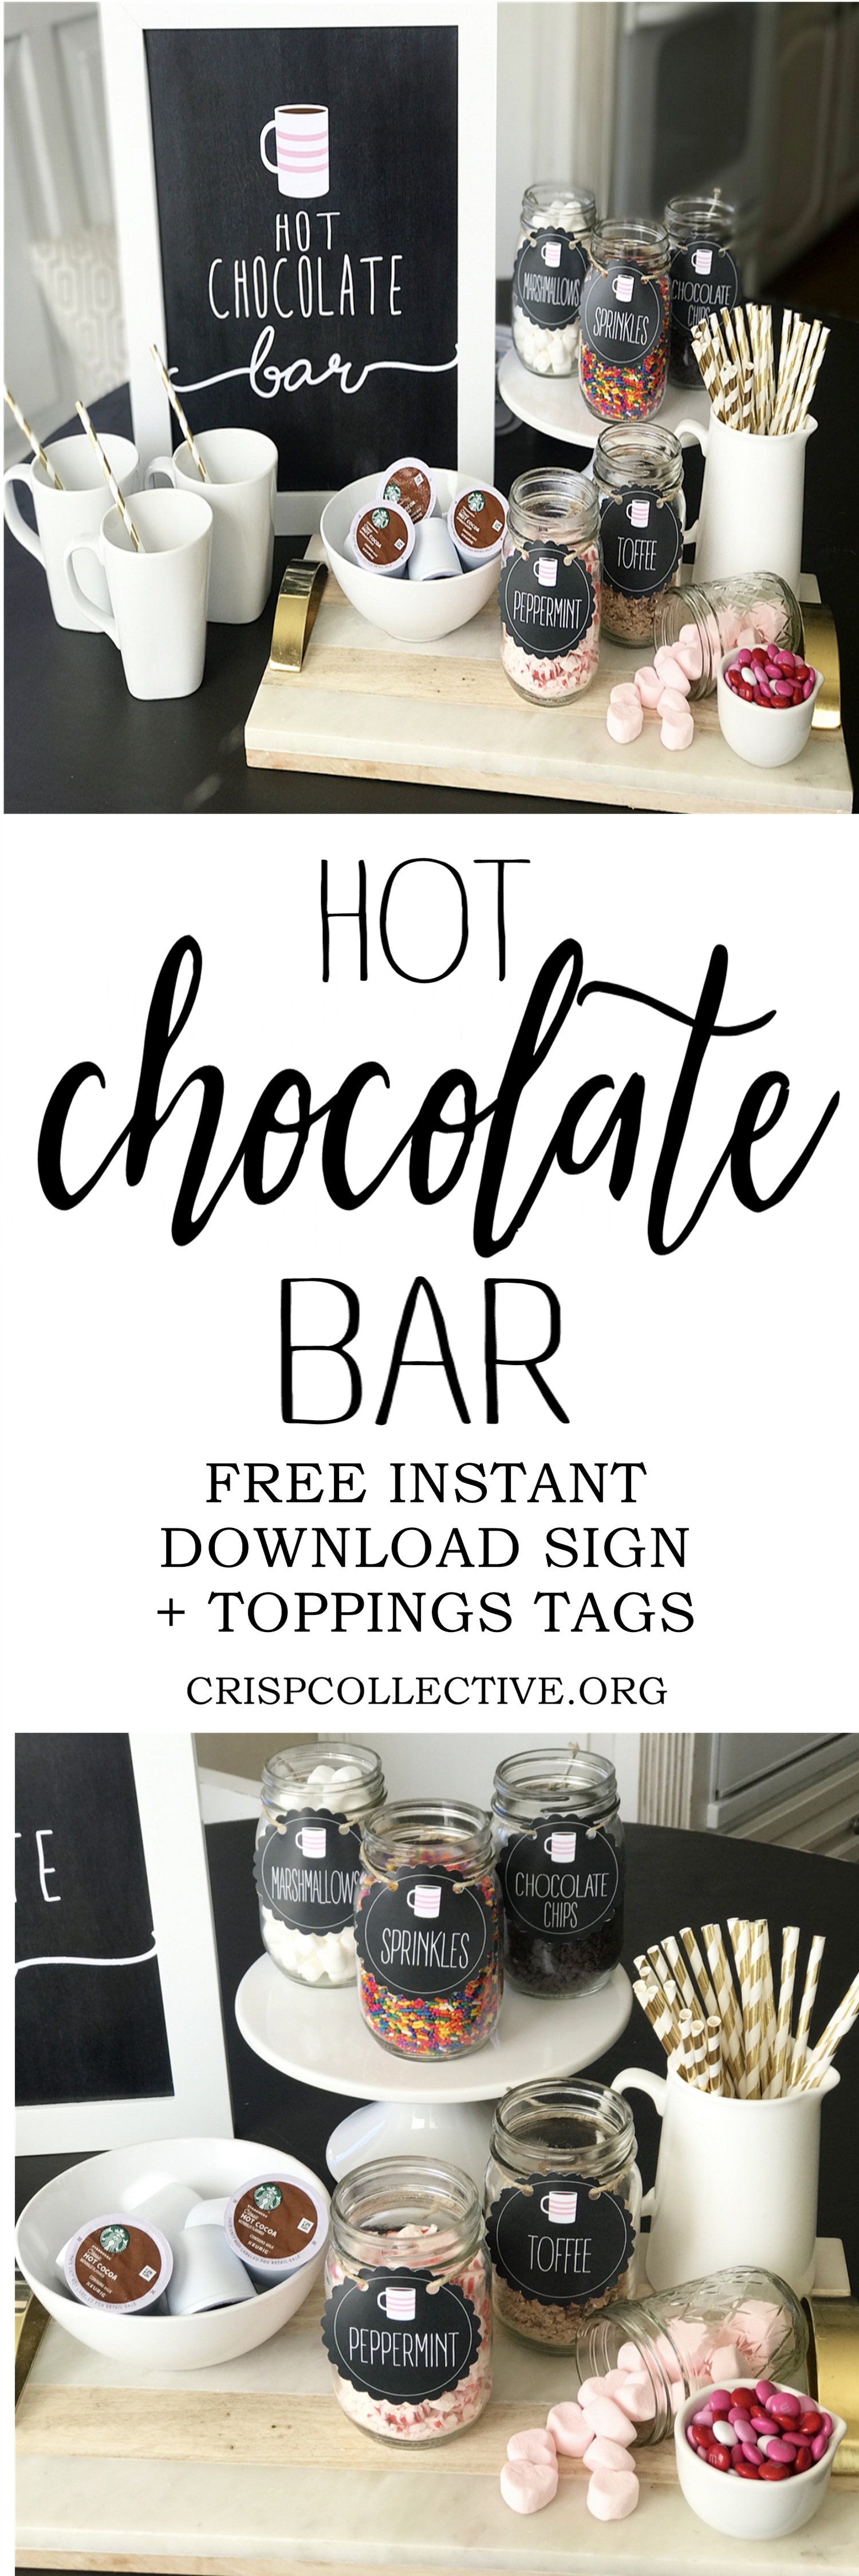 DIY Hot Chocolate Bar